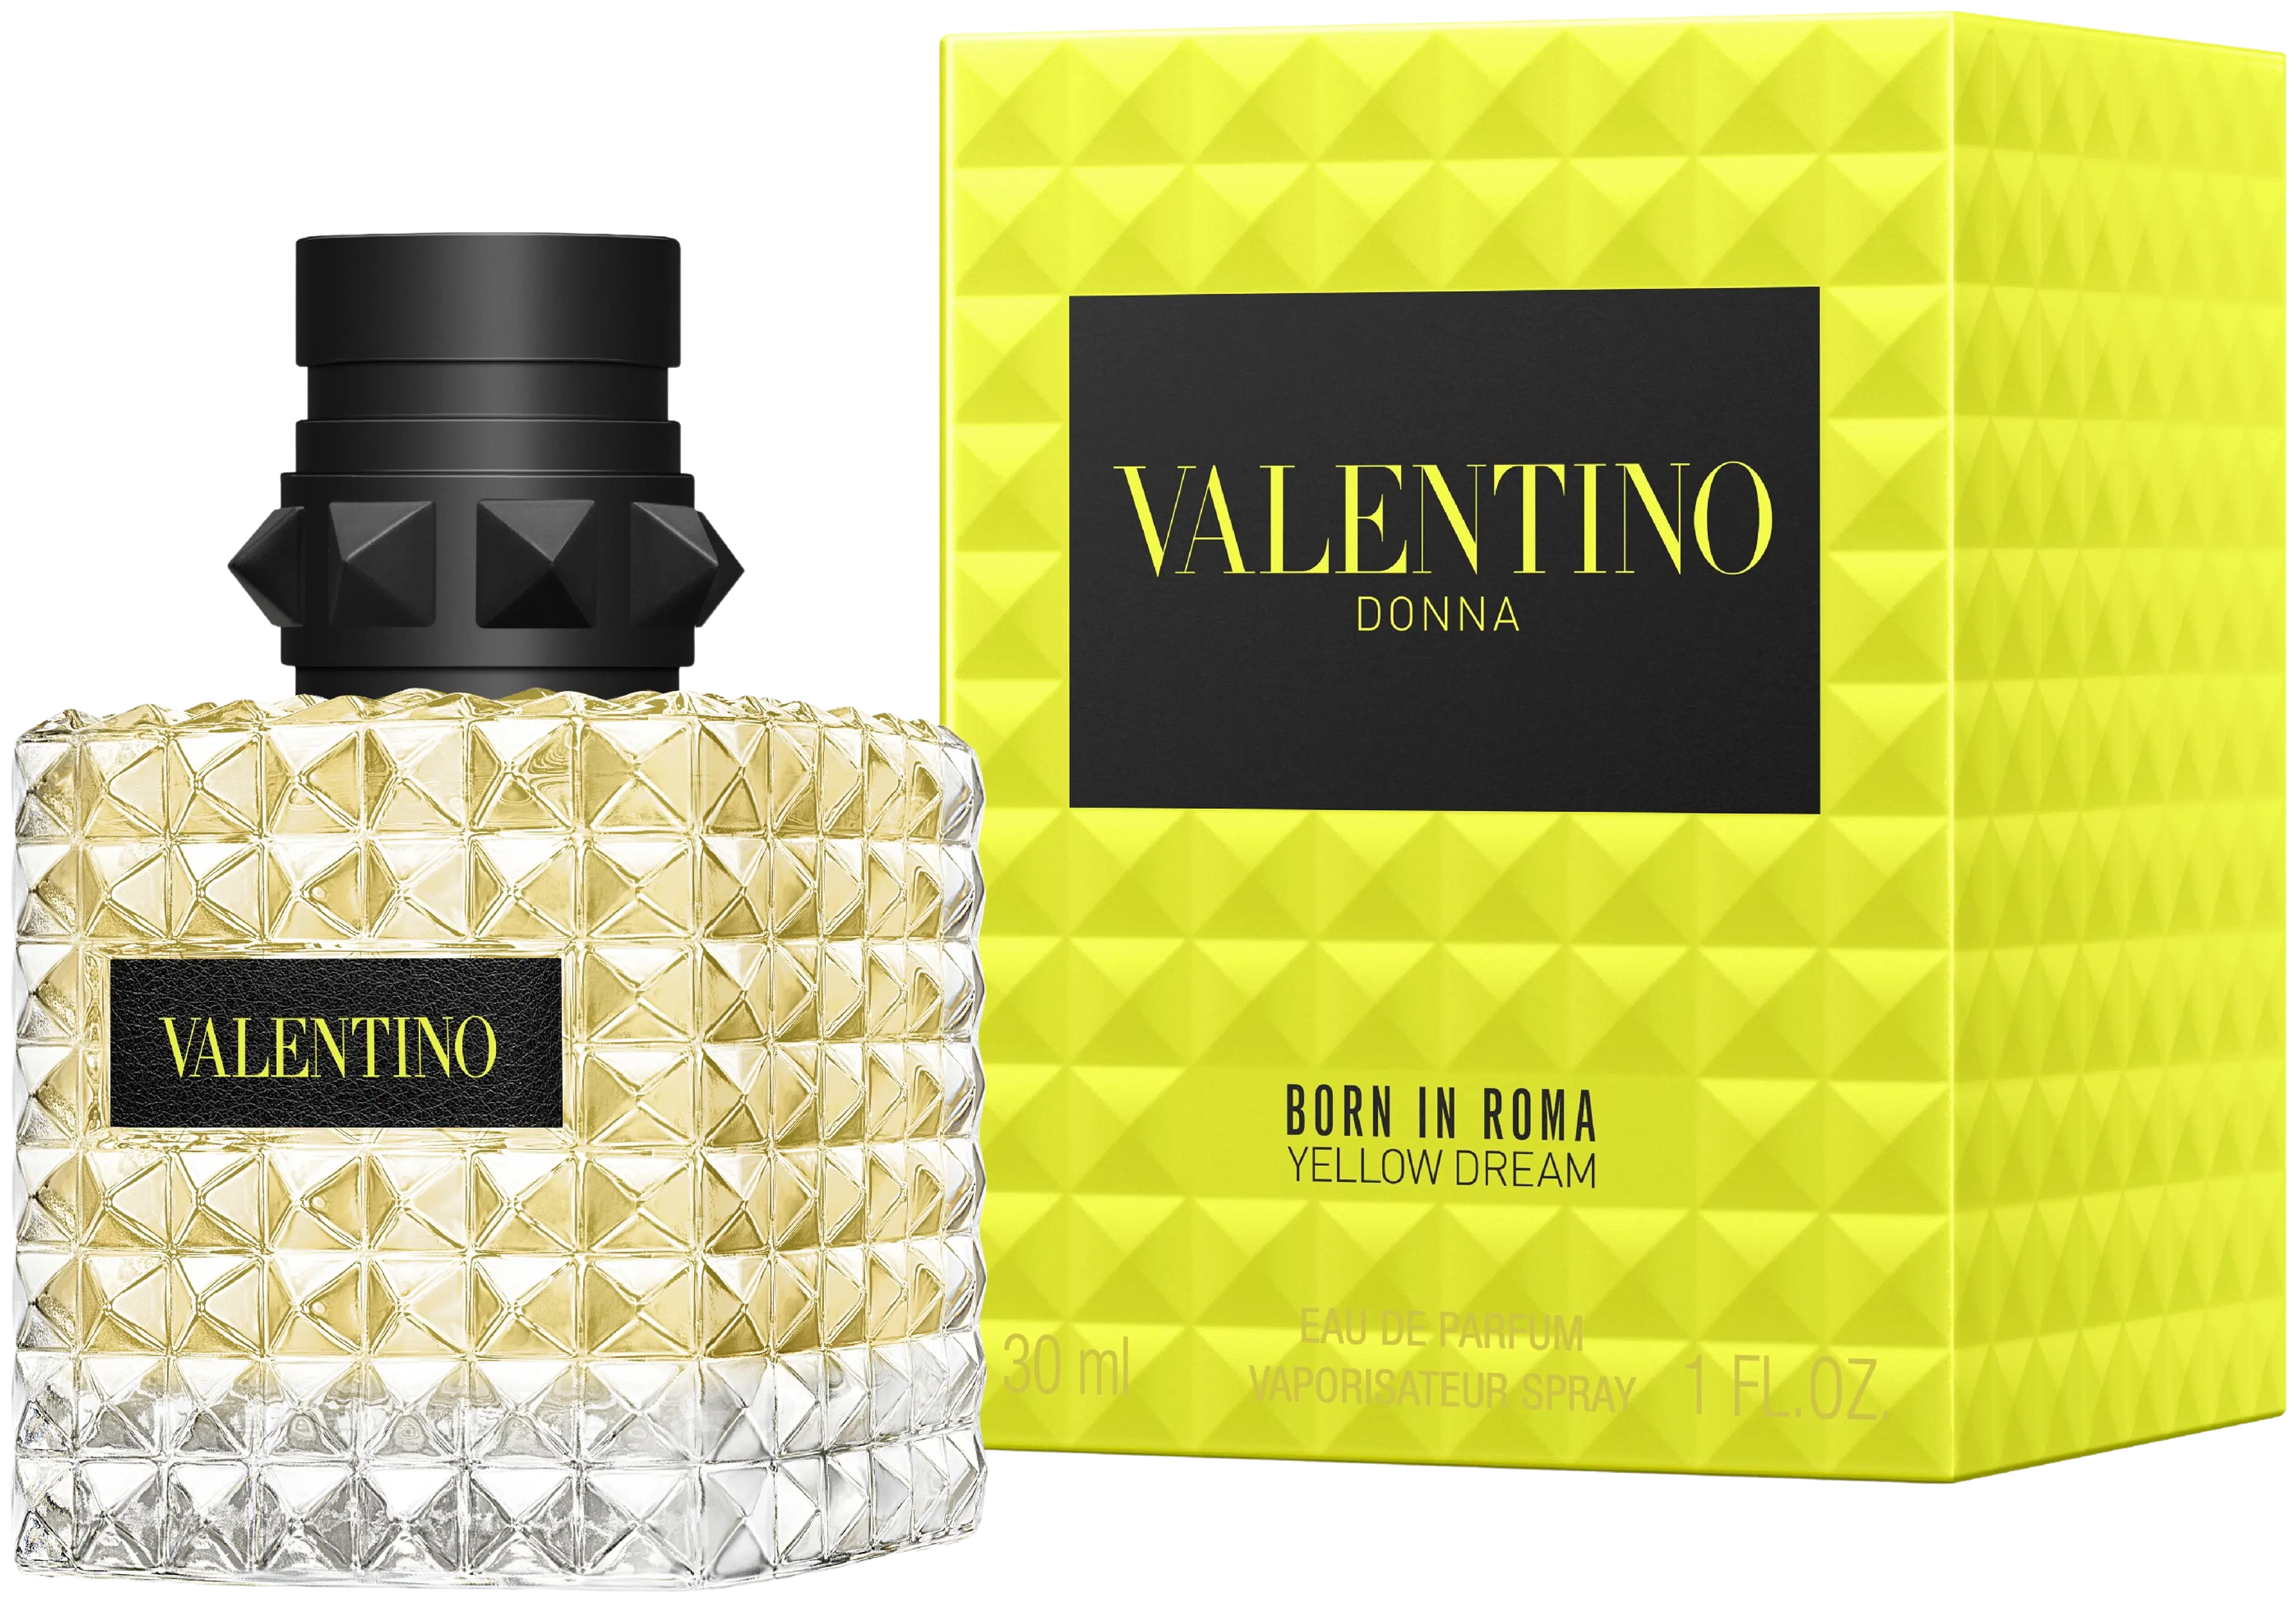 Valentino Donna Born in Roma Yellowdream EdP tuoksu 30 ml